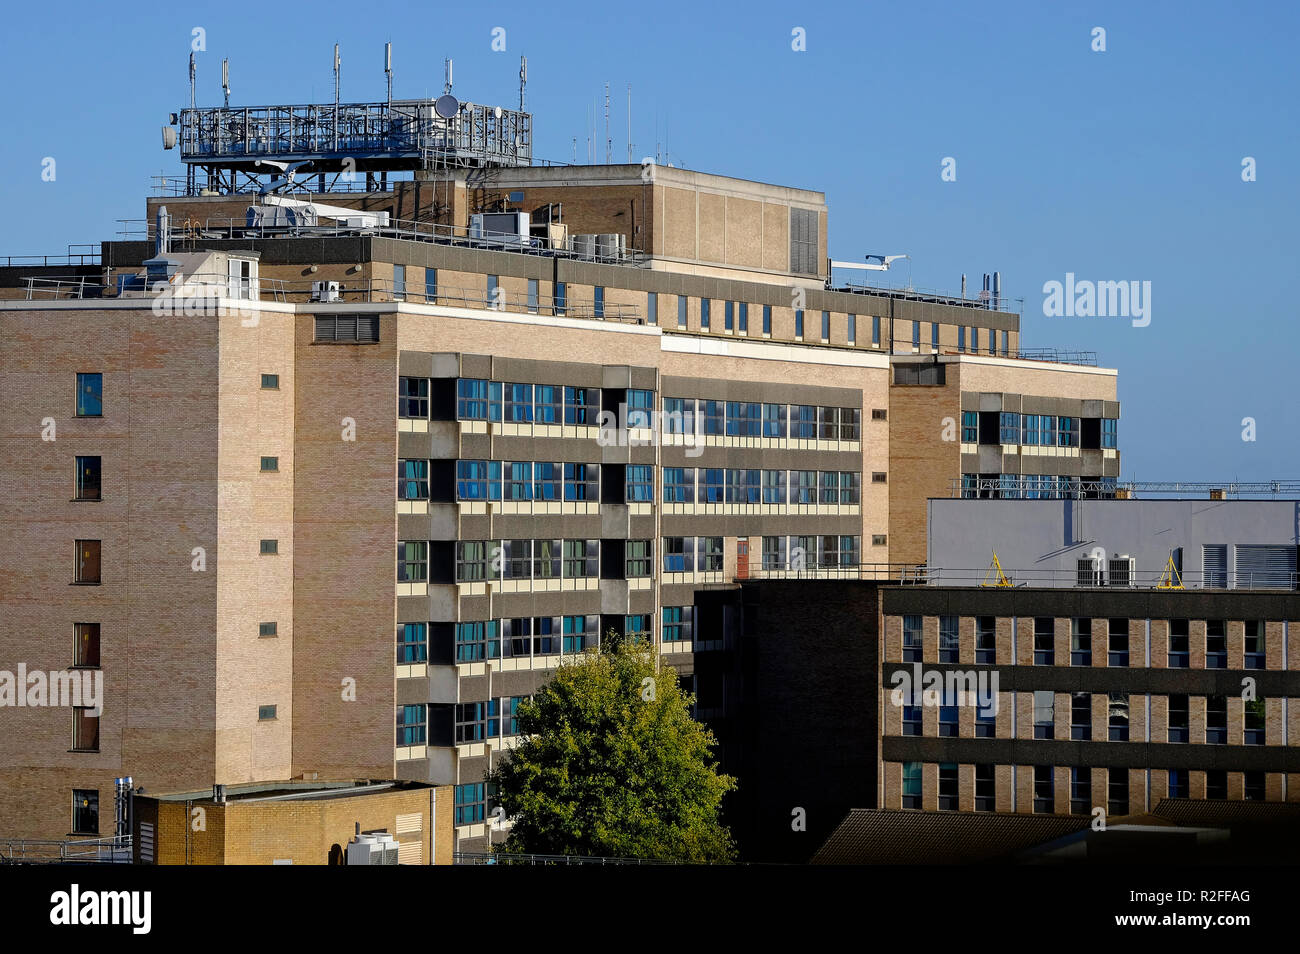 addenbrooke's, cambridge university hospital, england Stock Photo